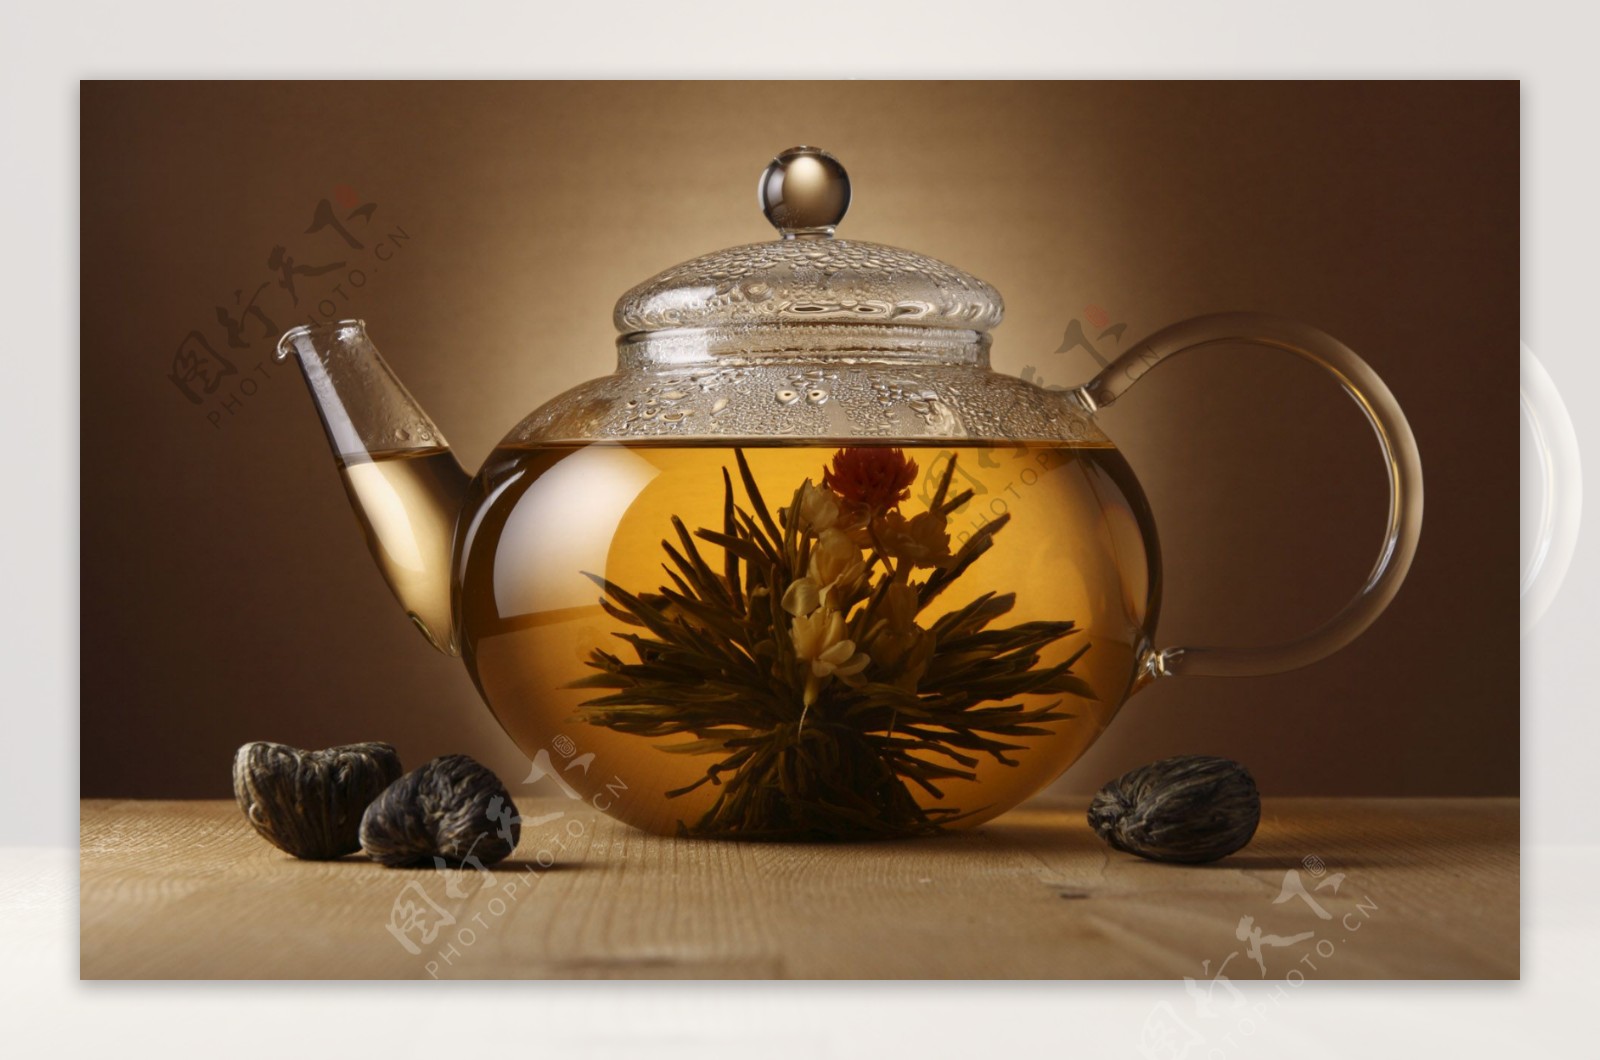 茶壶茶水茶叶图片